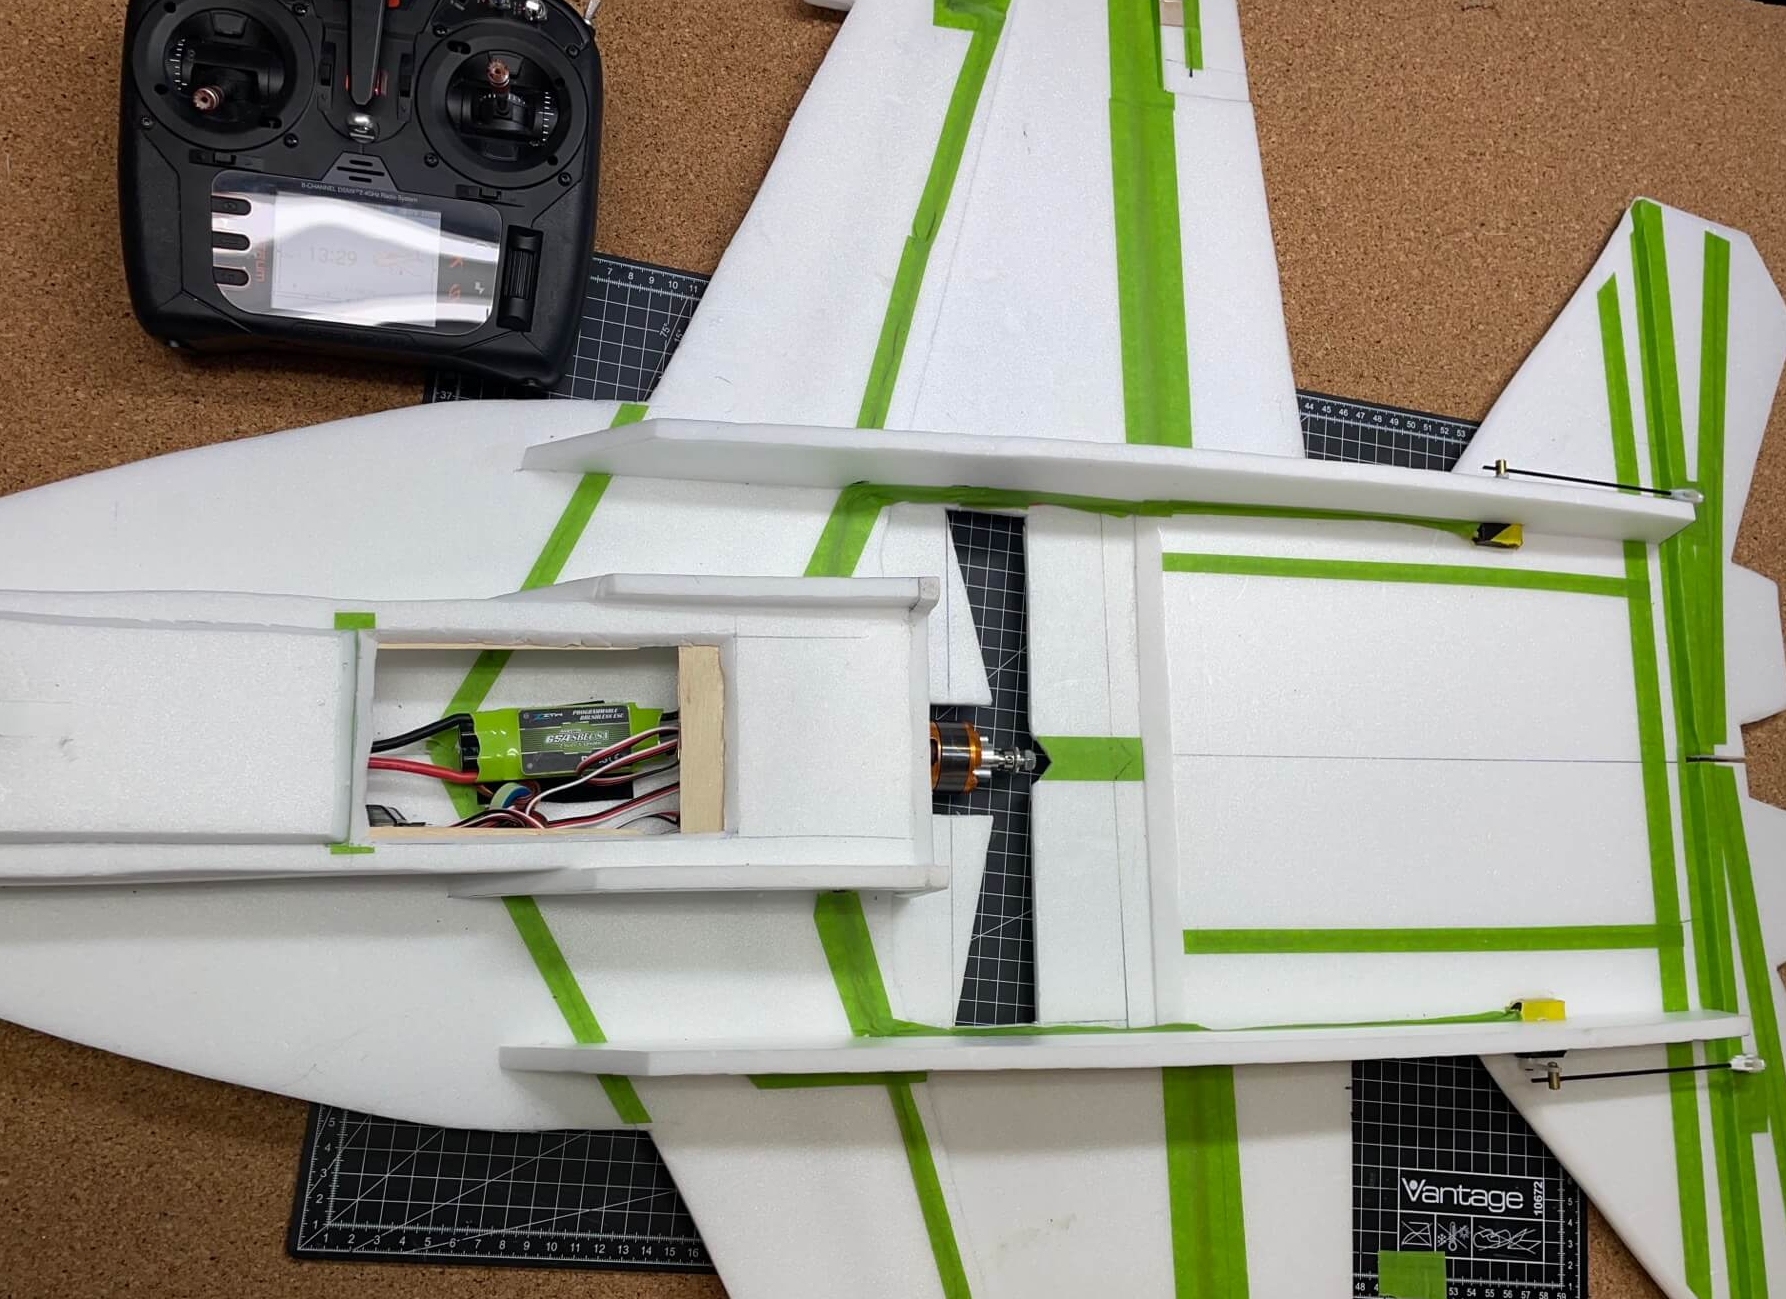 Die fertige Unterseite der F-18. Theoretisch ist das Modell bis auf die stabilisierenden Seitenleitwerke fast flugfertig, alles andere ist Dekoration.